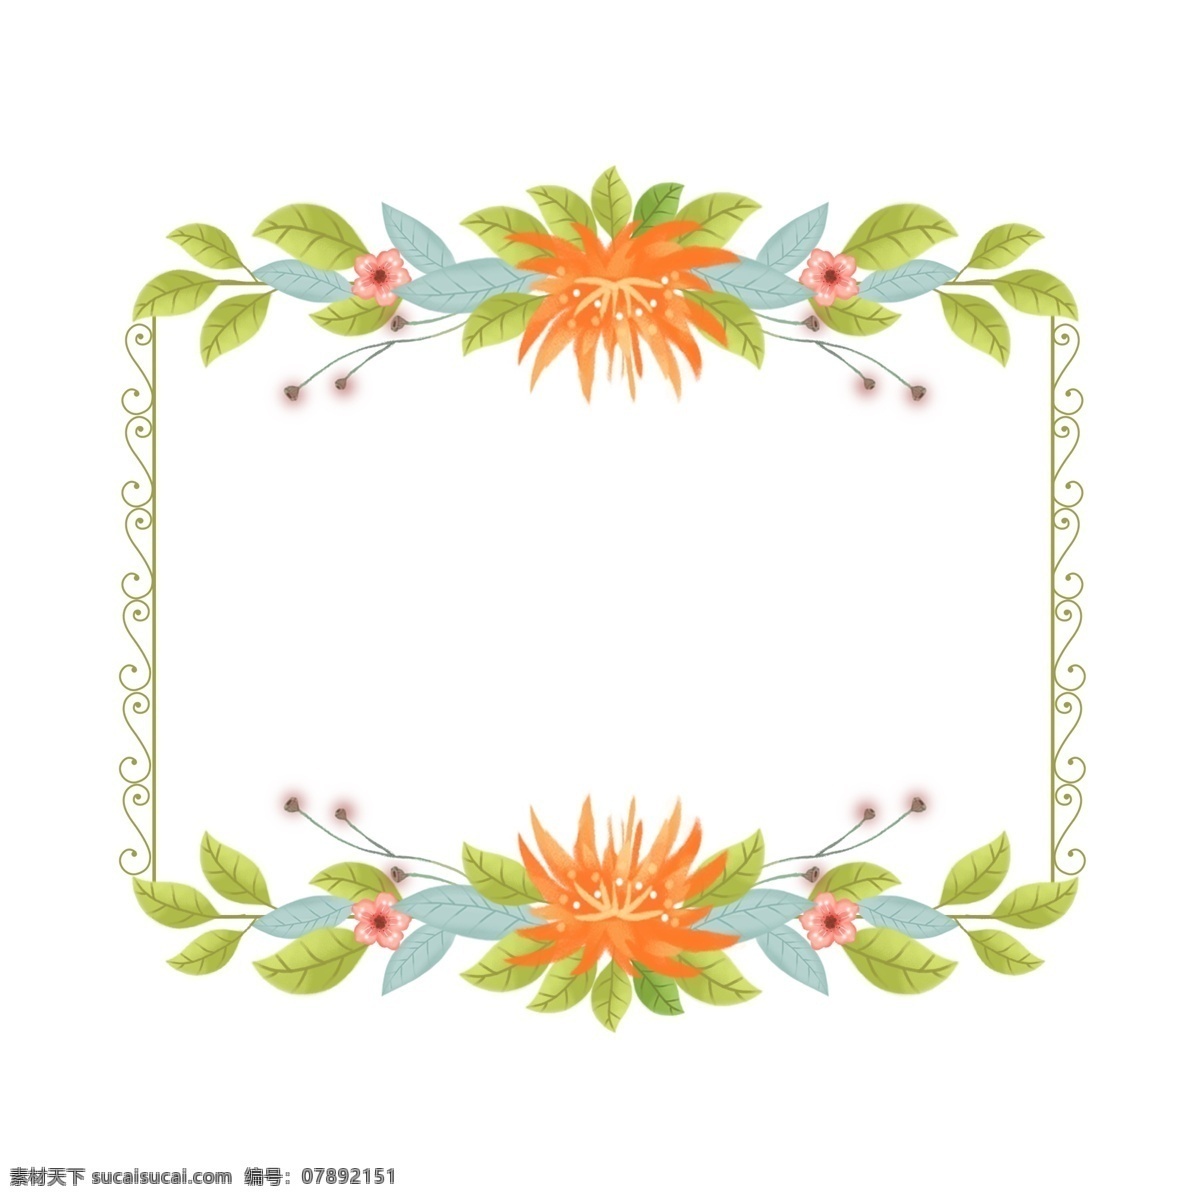 长方形 卡通 手绘 清新 花卉 植物 边框 对话框 唯美 花朵 欧式 浪漫 手绘花 花 装饰